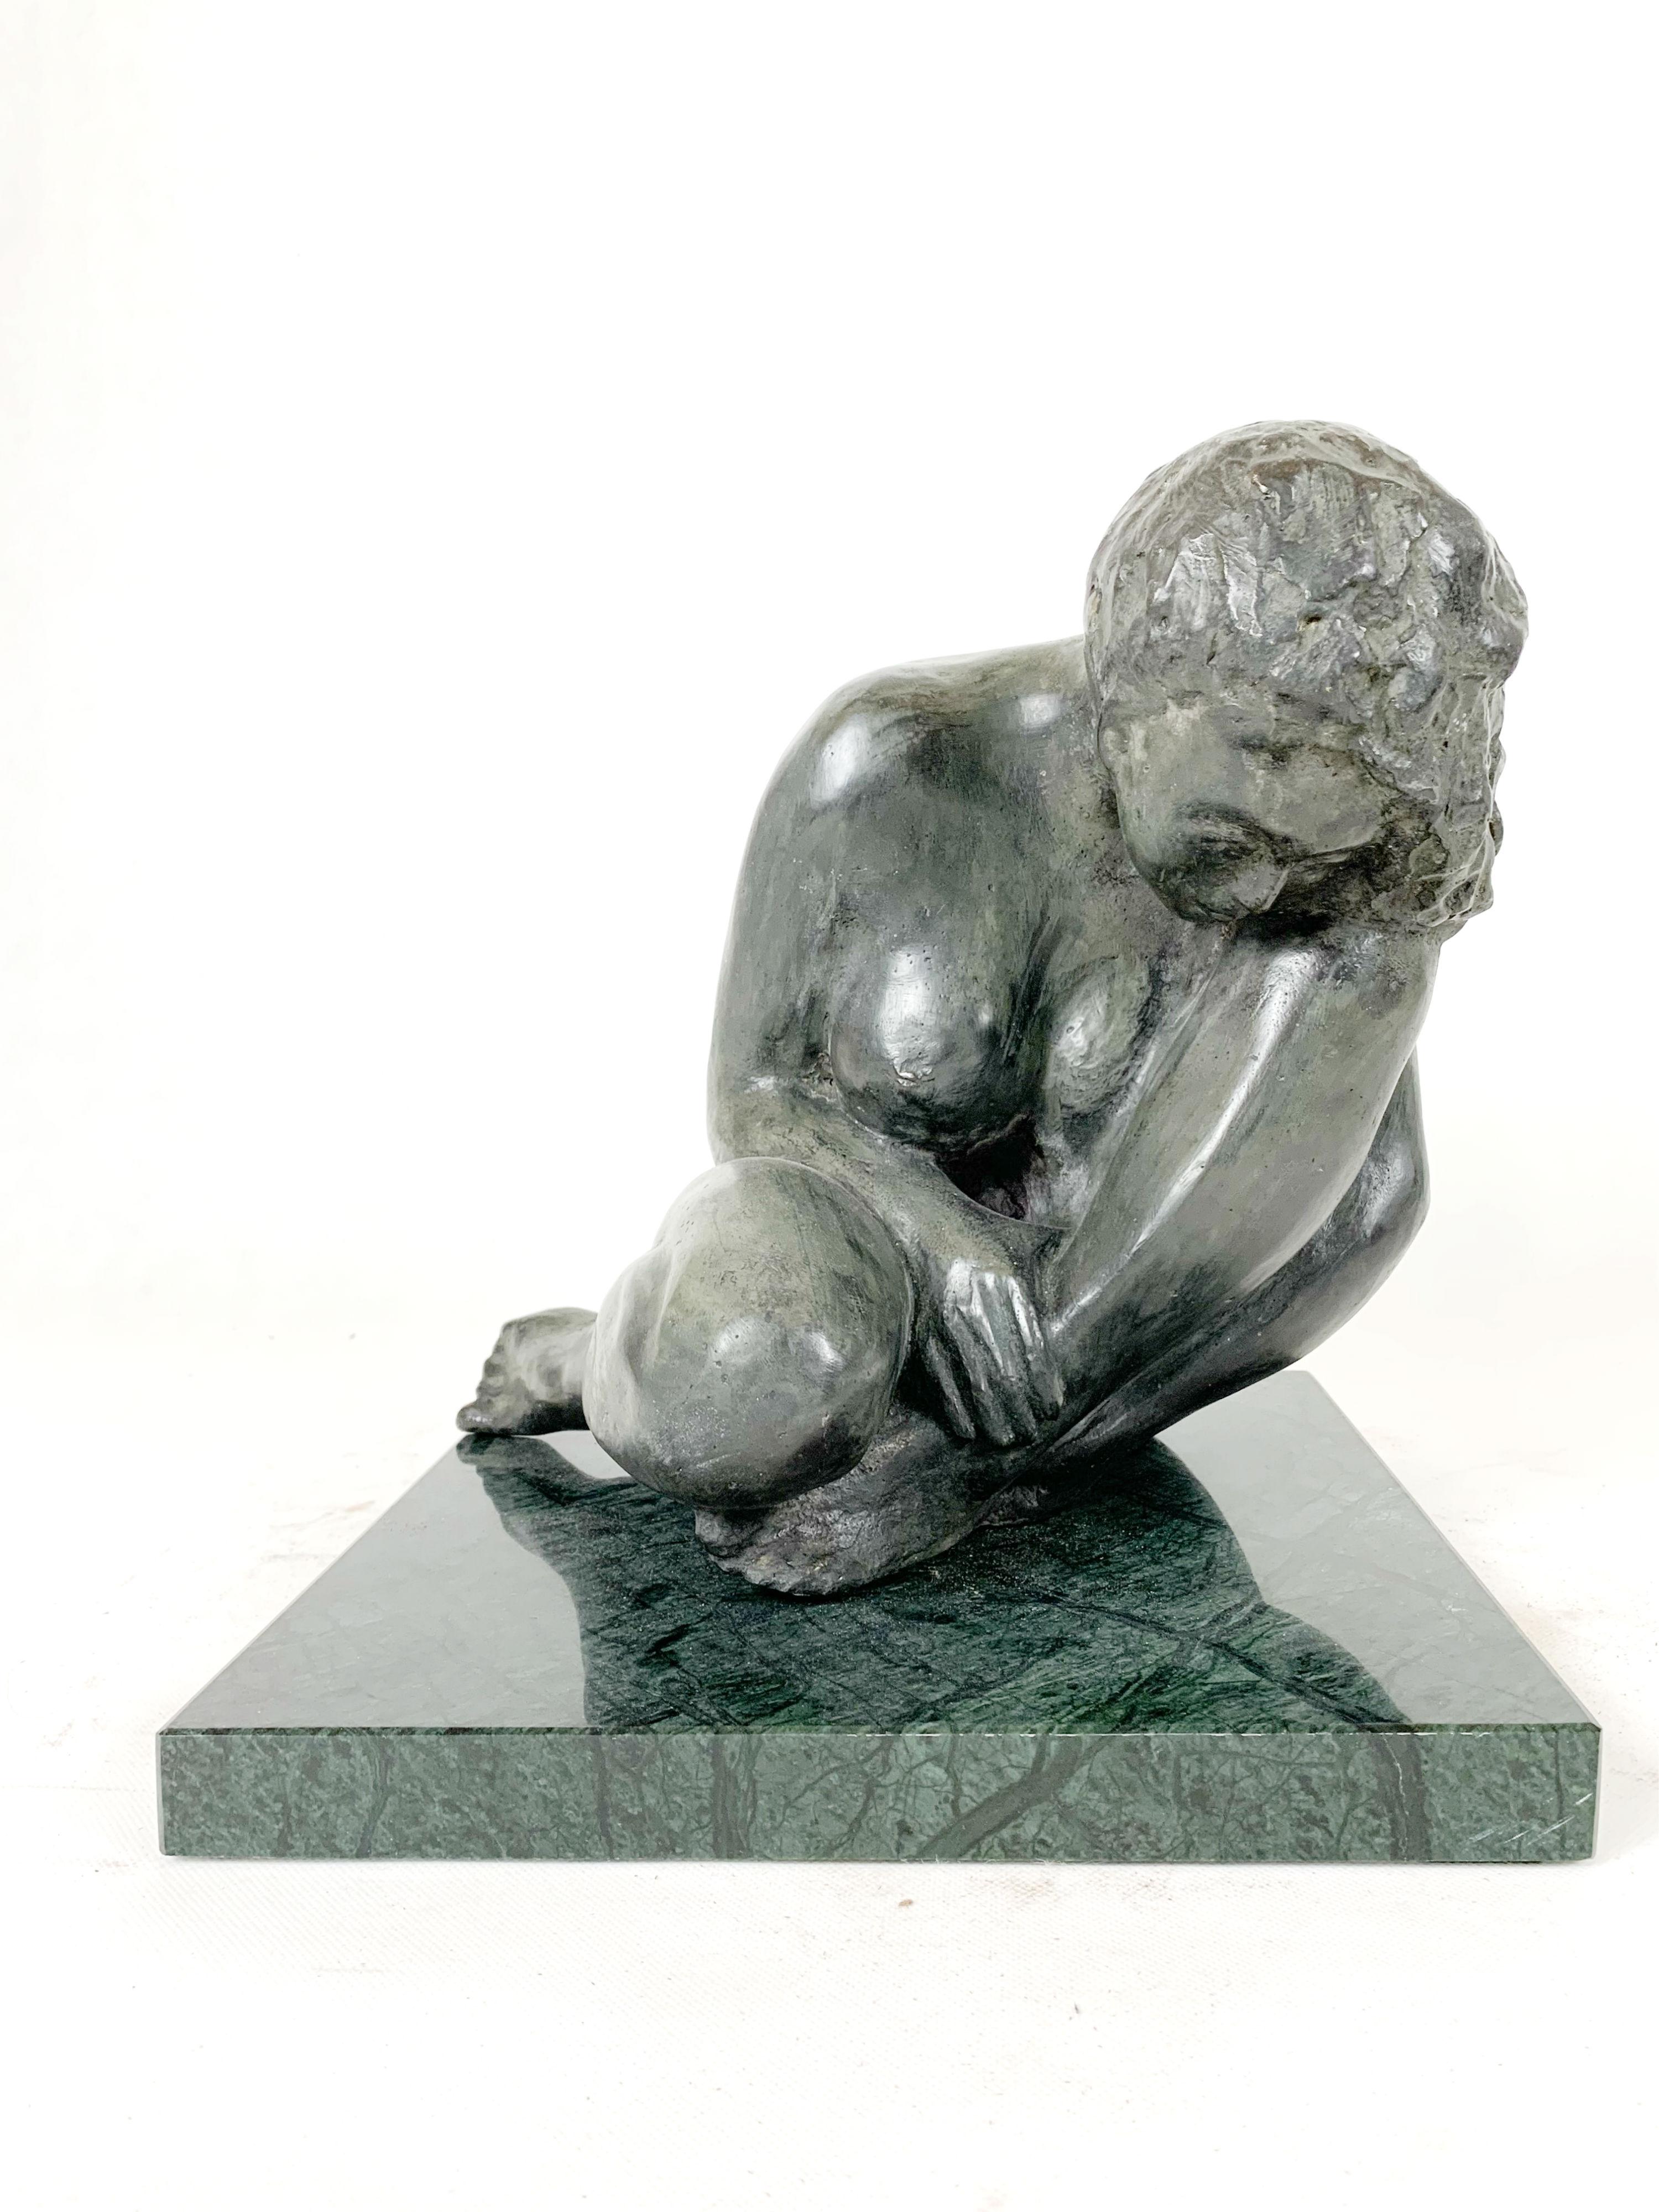 Femme - Sculpture figurative en bronze contemporaine du XXIe siècle, classique, réalisme - Or Nude Sculpture par Ryszard Piotrowski